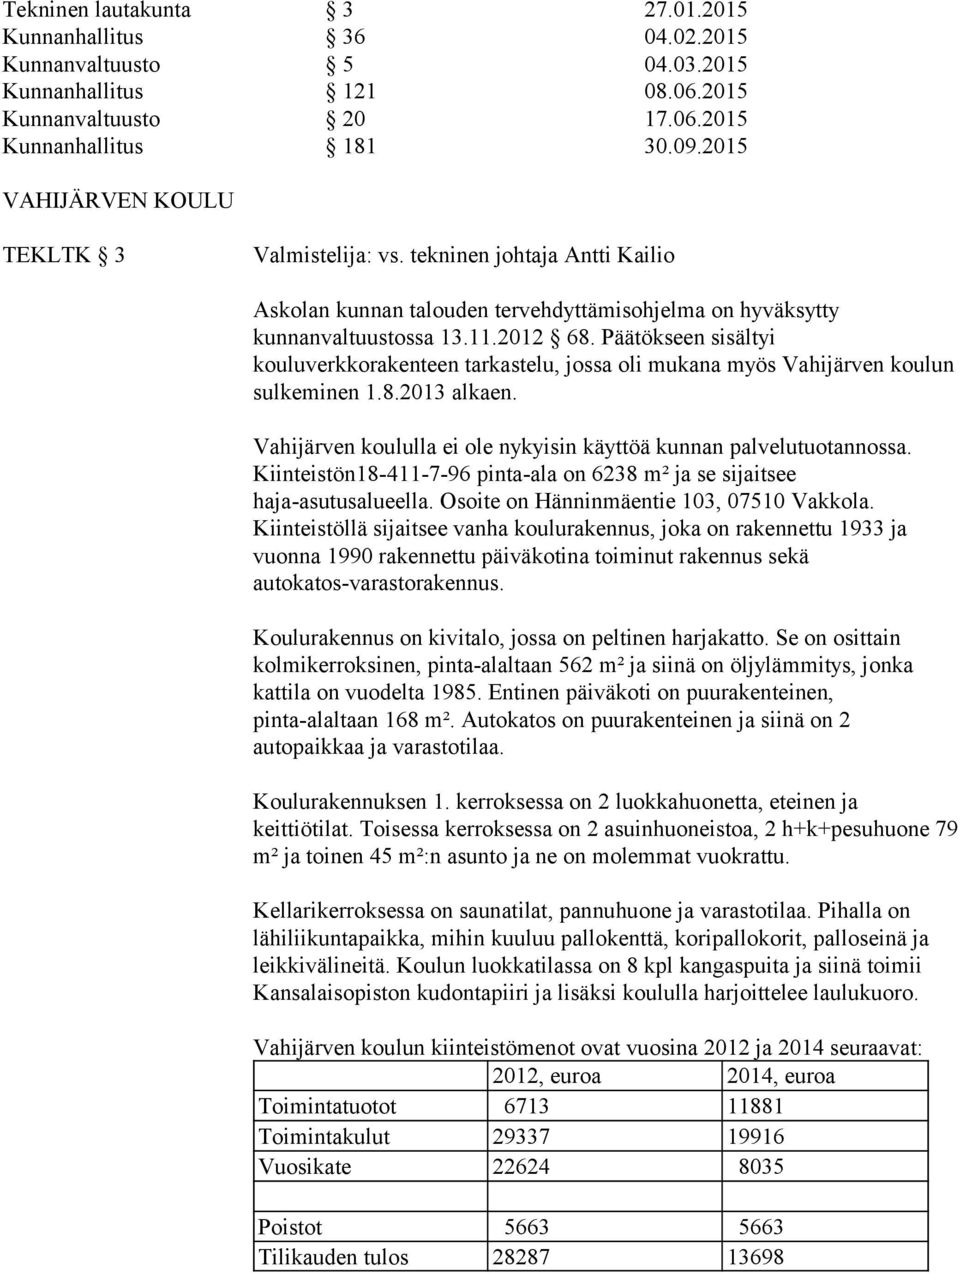 Päätökseen sisältyi kouluverkkorakenteen tarkastelu, jossa oli mukana myös Vahijärven koulun sulkeminen 1.8.2013 alkaen. Vahijärven koululla ei ole nykyisin käyttöä kunnan palvelutuotannossa.